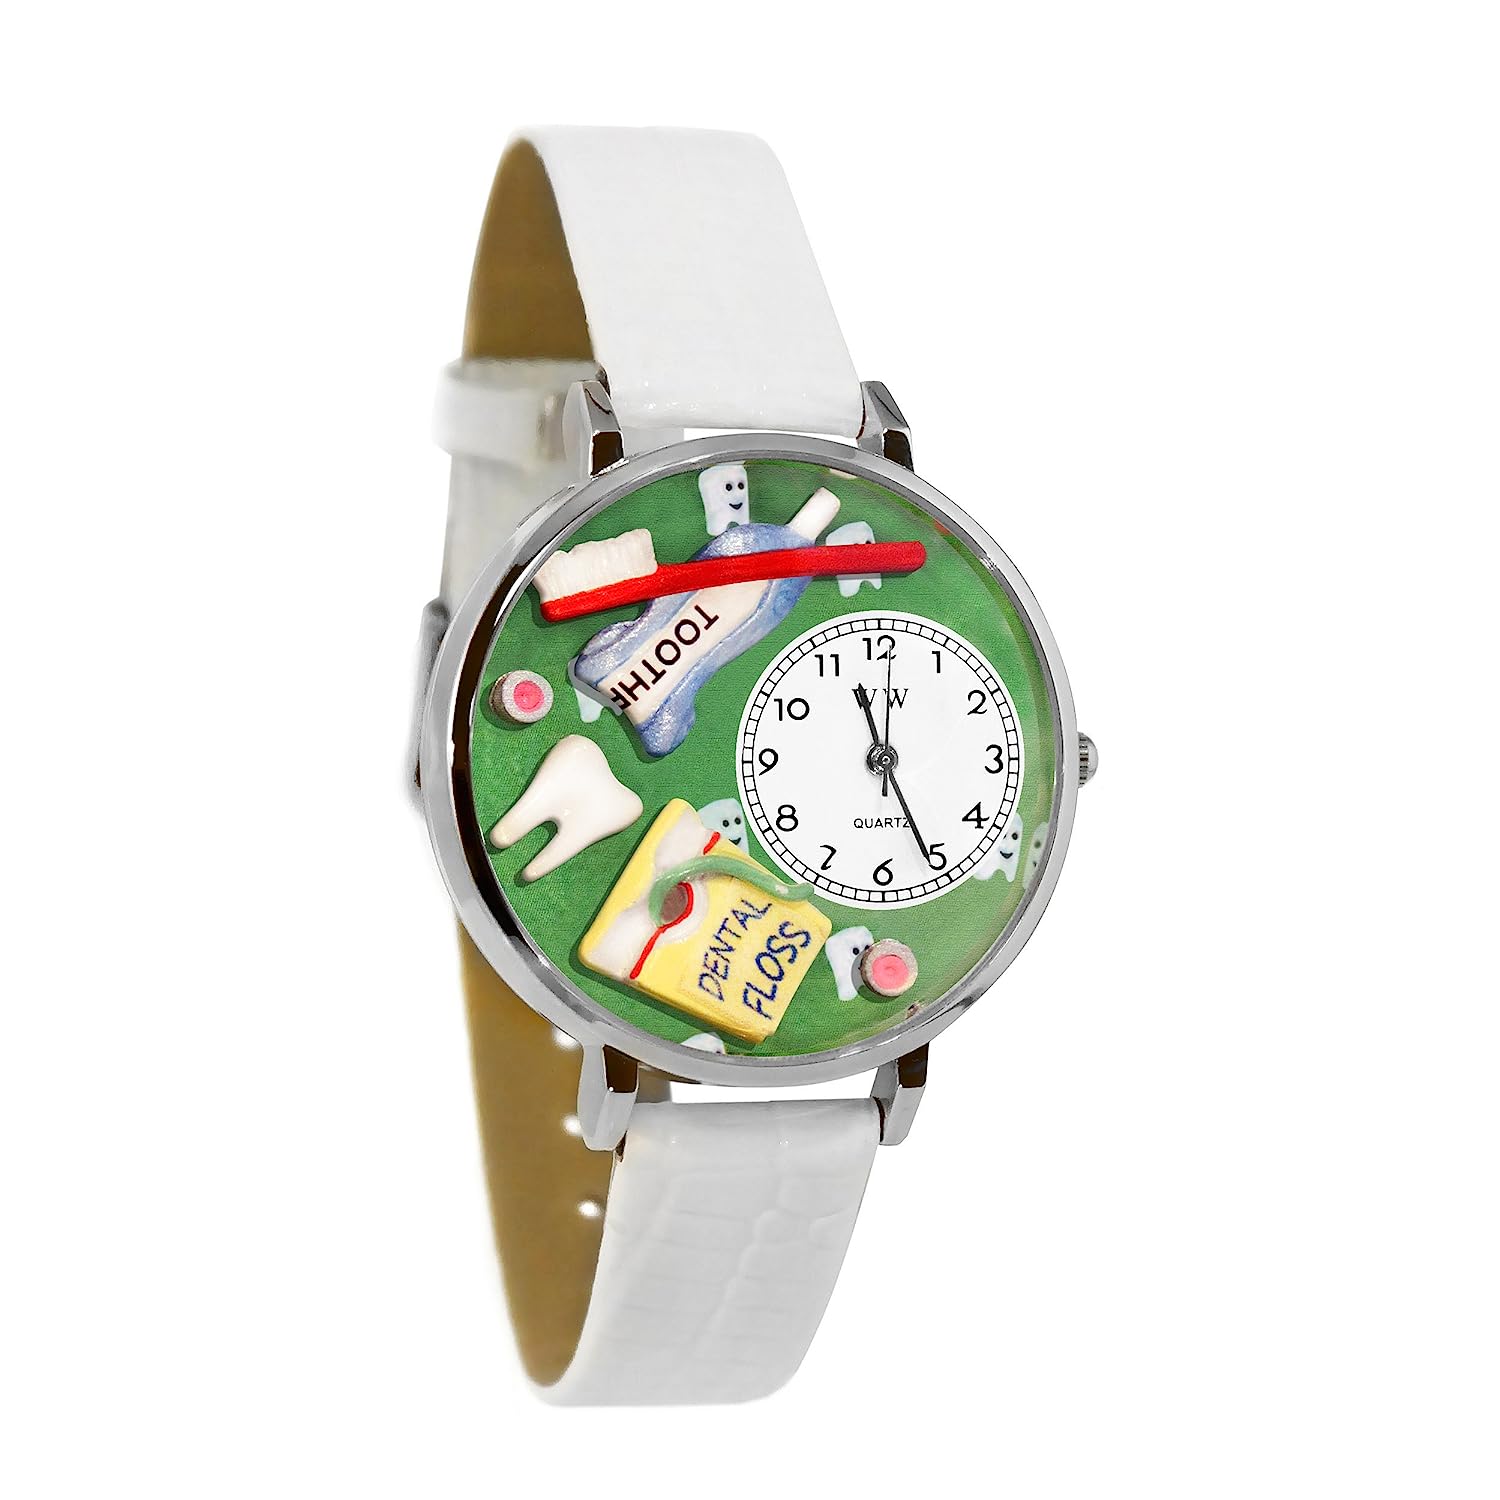 気まぐれな腕時計 かわいい プレゼント クリスマス ユニセックス 【送料無料】Whimsical Gifts Profession Jewelry Sets (Dental, Silver)気まぐれな腕時計 かわいい プレゼント クリスマス ユニセックス